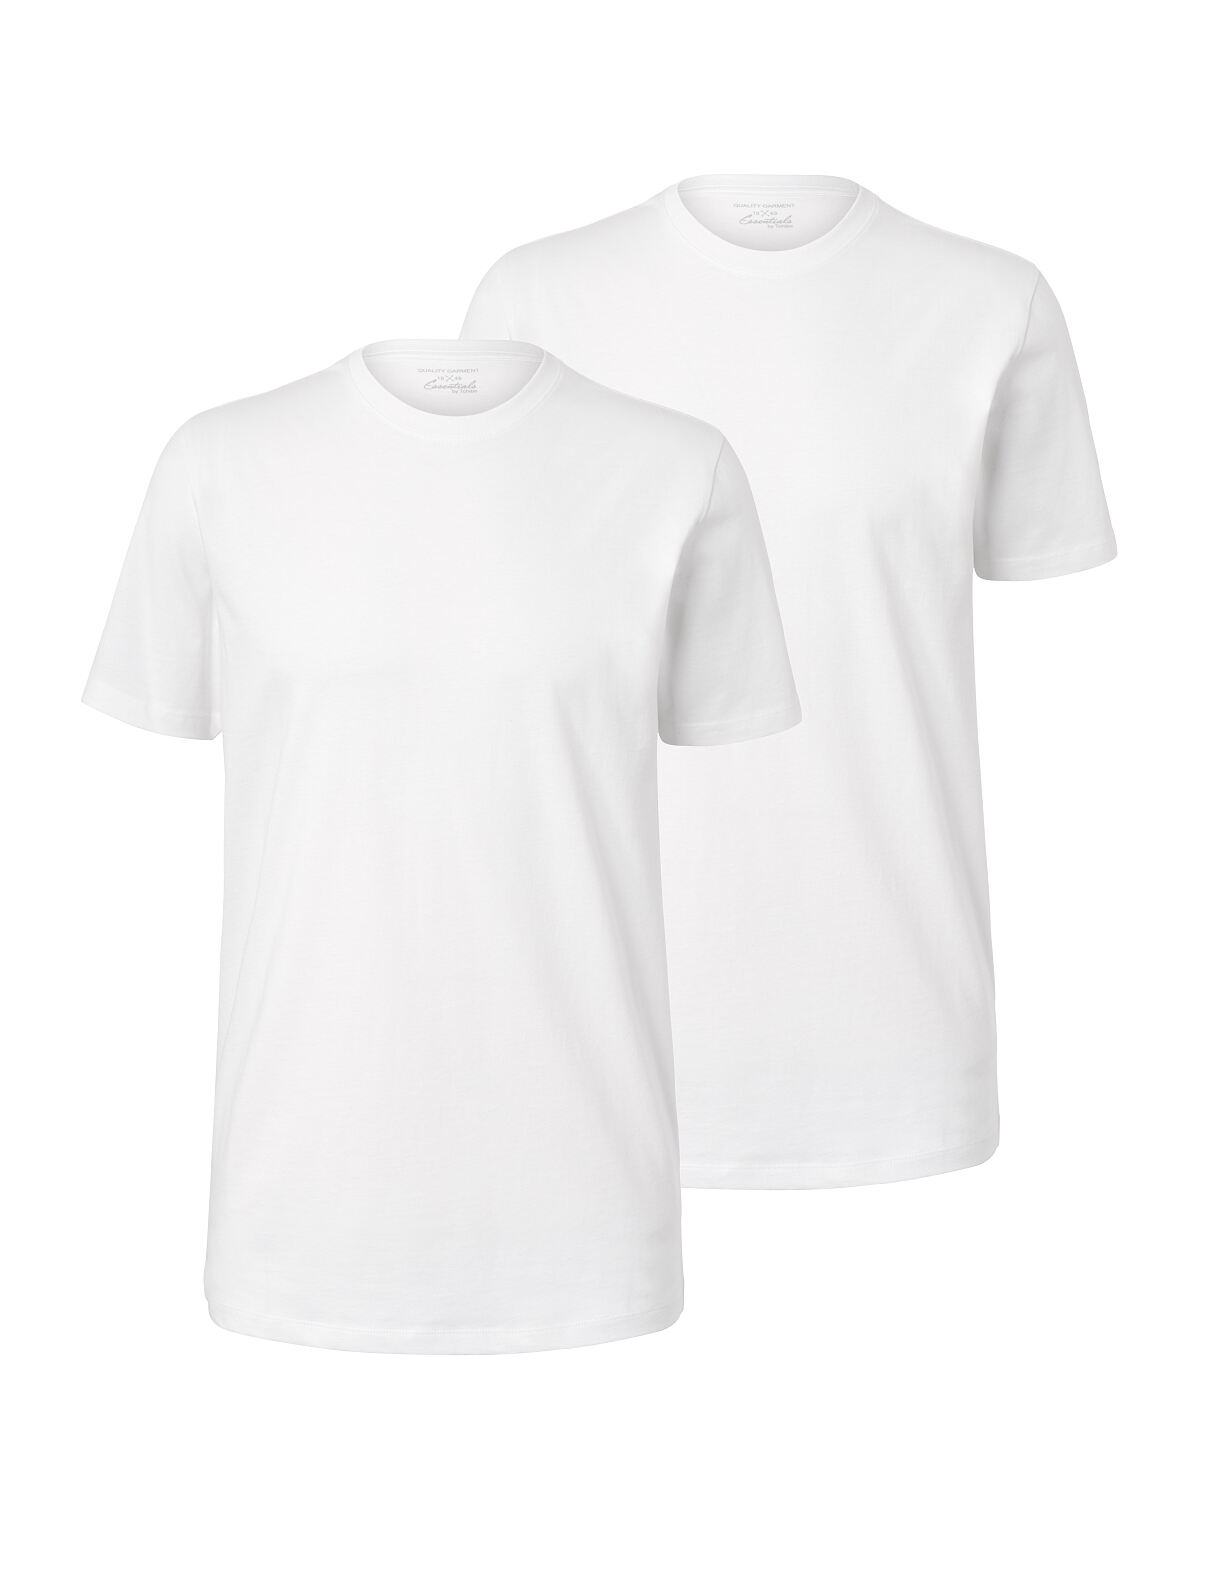 TCHIBO_127811 2 T-Shirts, Weiß FS 1 17 (1)